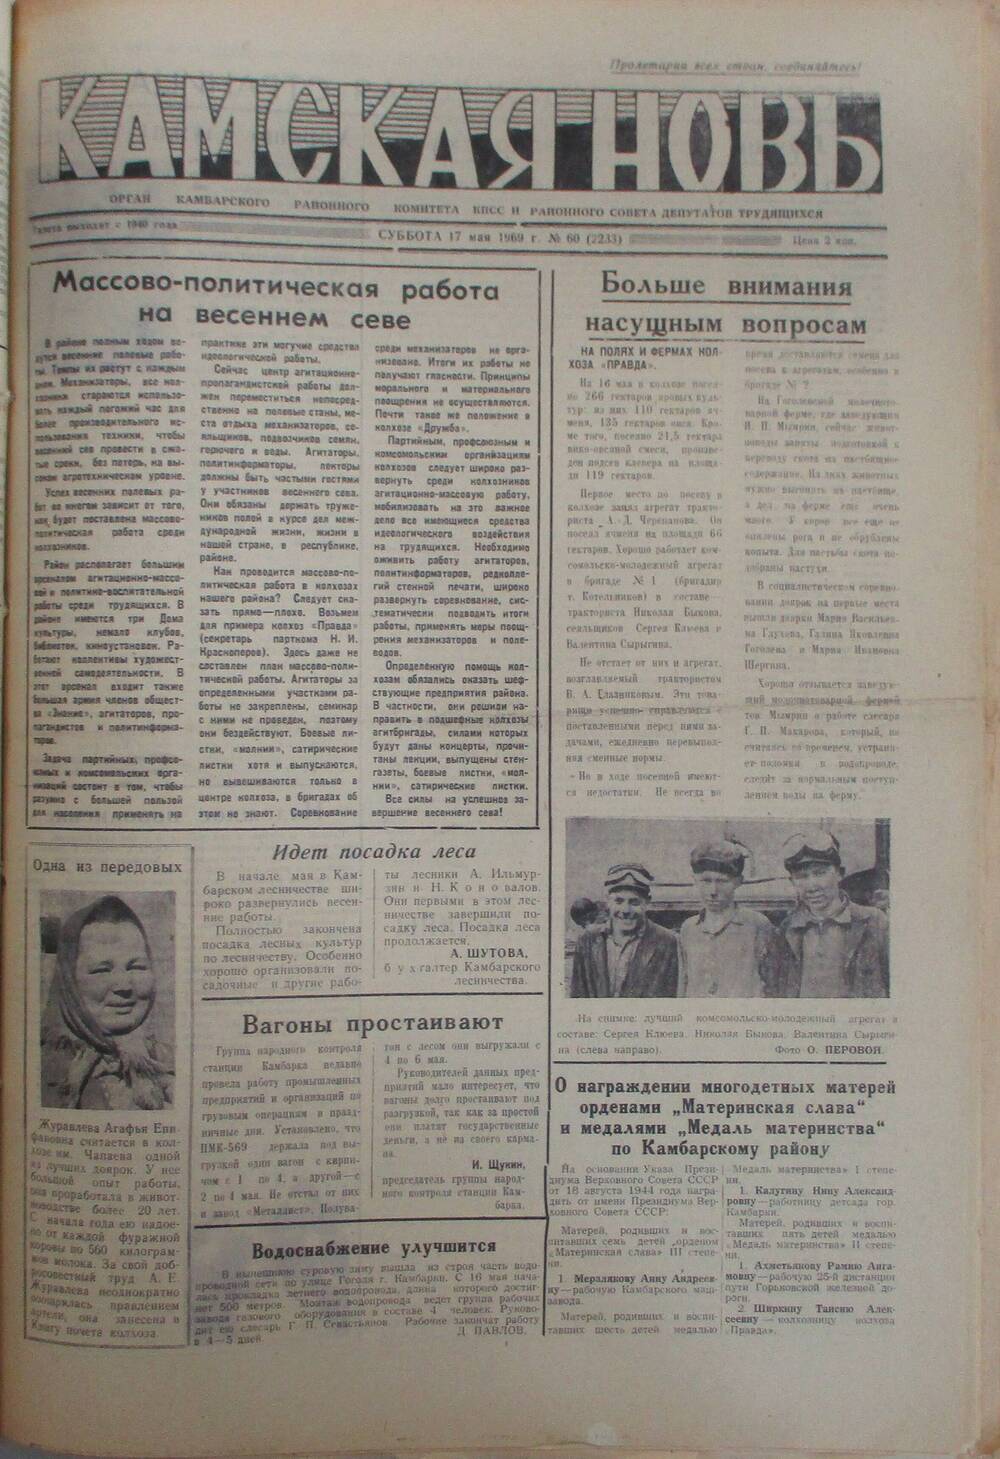 Газеты Камская новь за 1969 год, орган Камбарского райсовета и  РККПСС, с №1 по №66, с №68 по №156. №60.